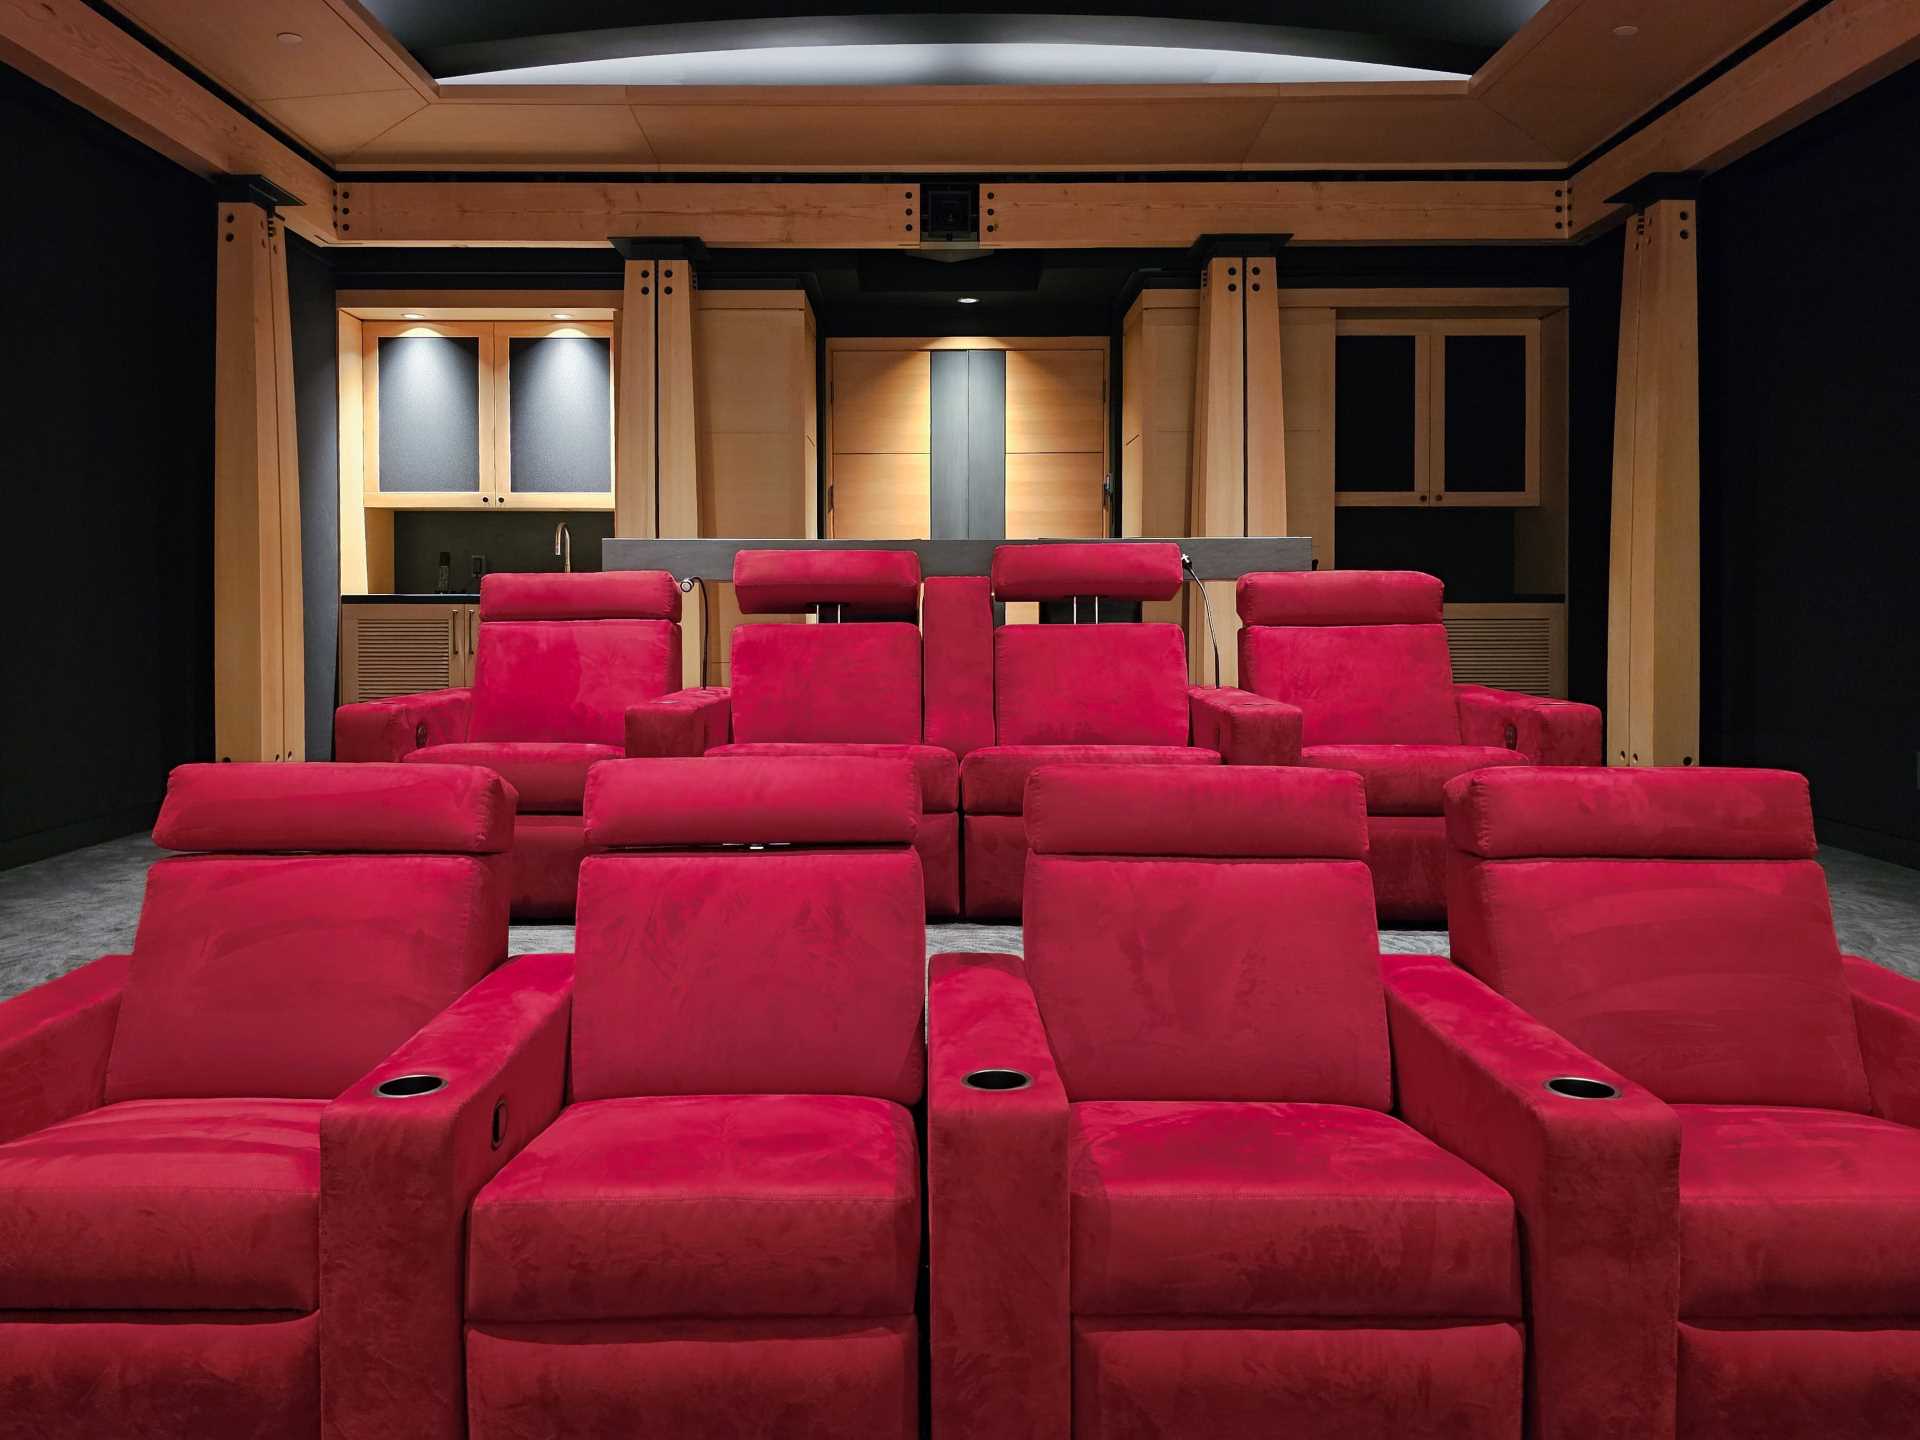 În acest home theater, scaunele de culoare roșu aprins adaugă o notă de culoare interiorului negru și lemn.